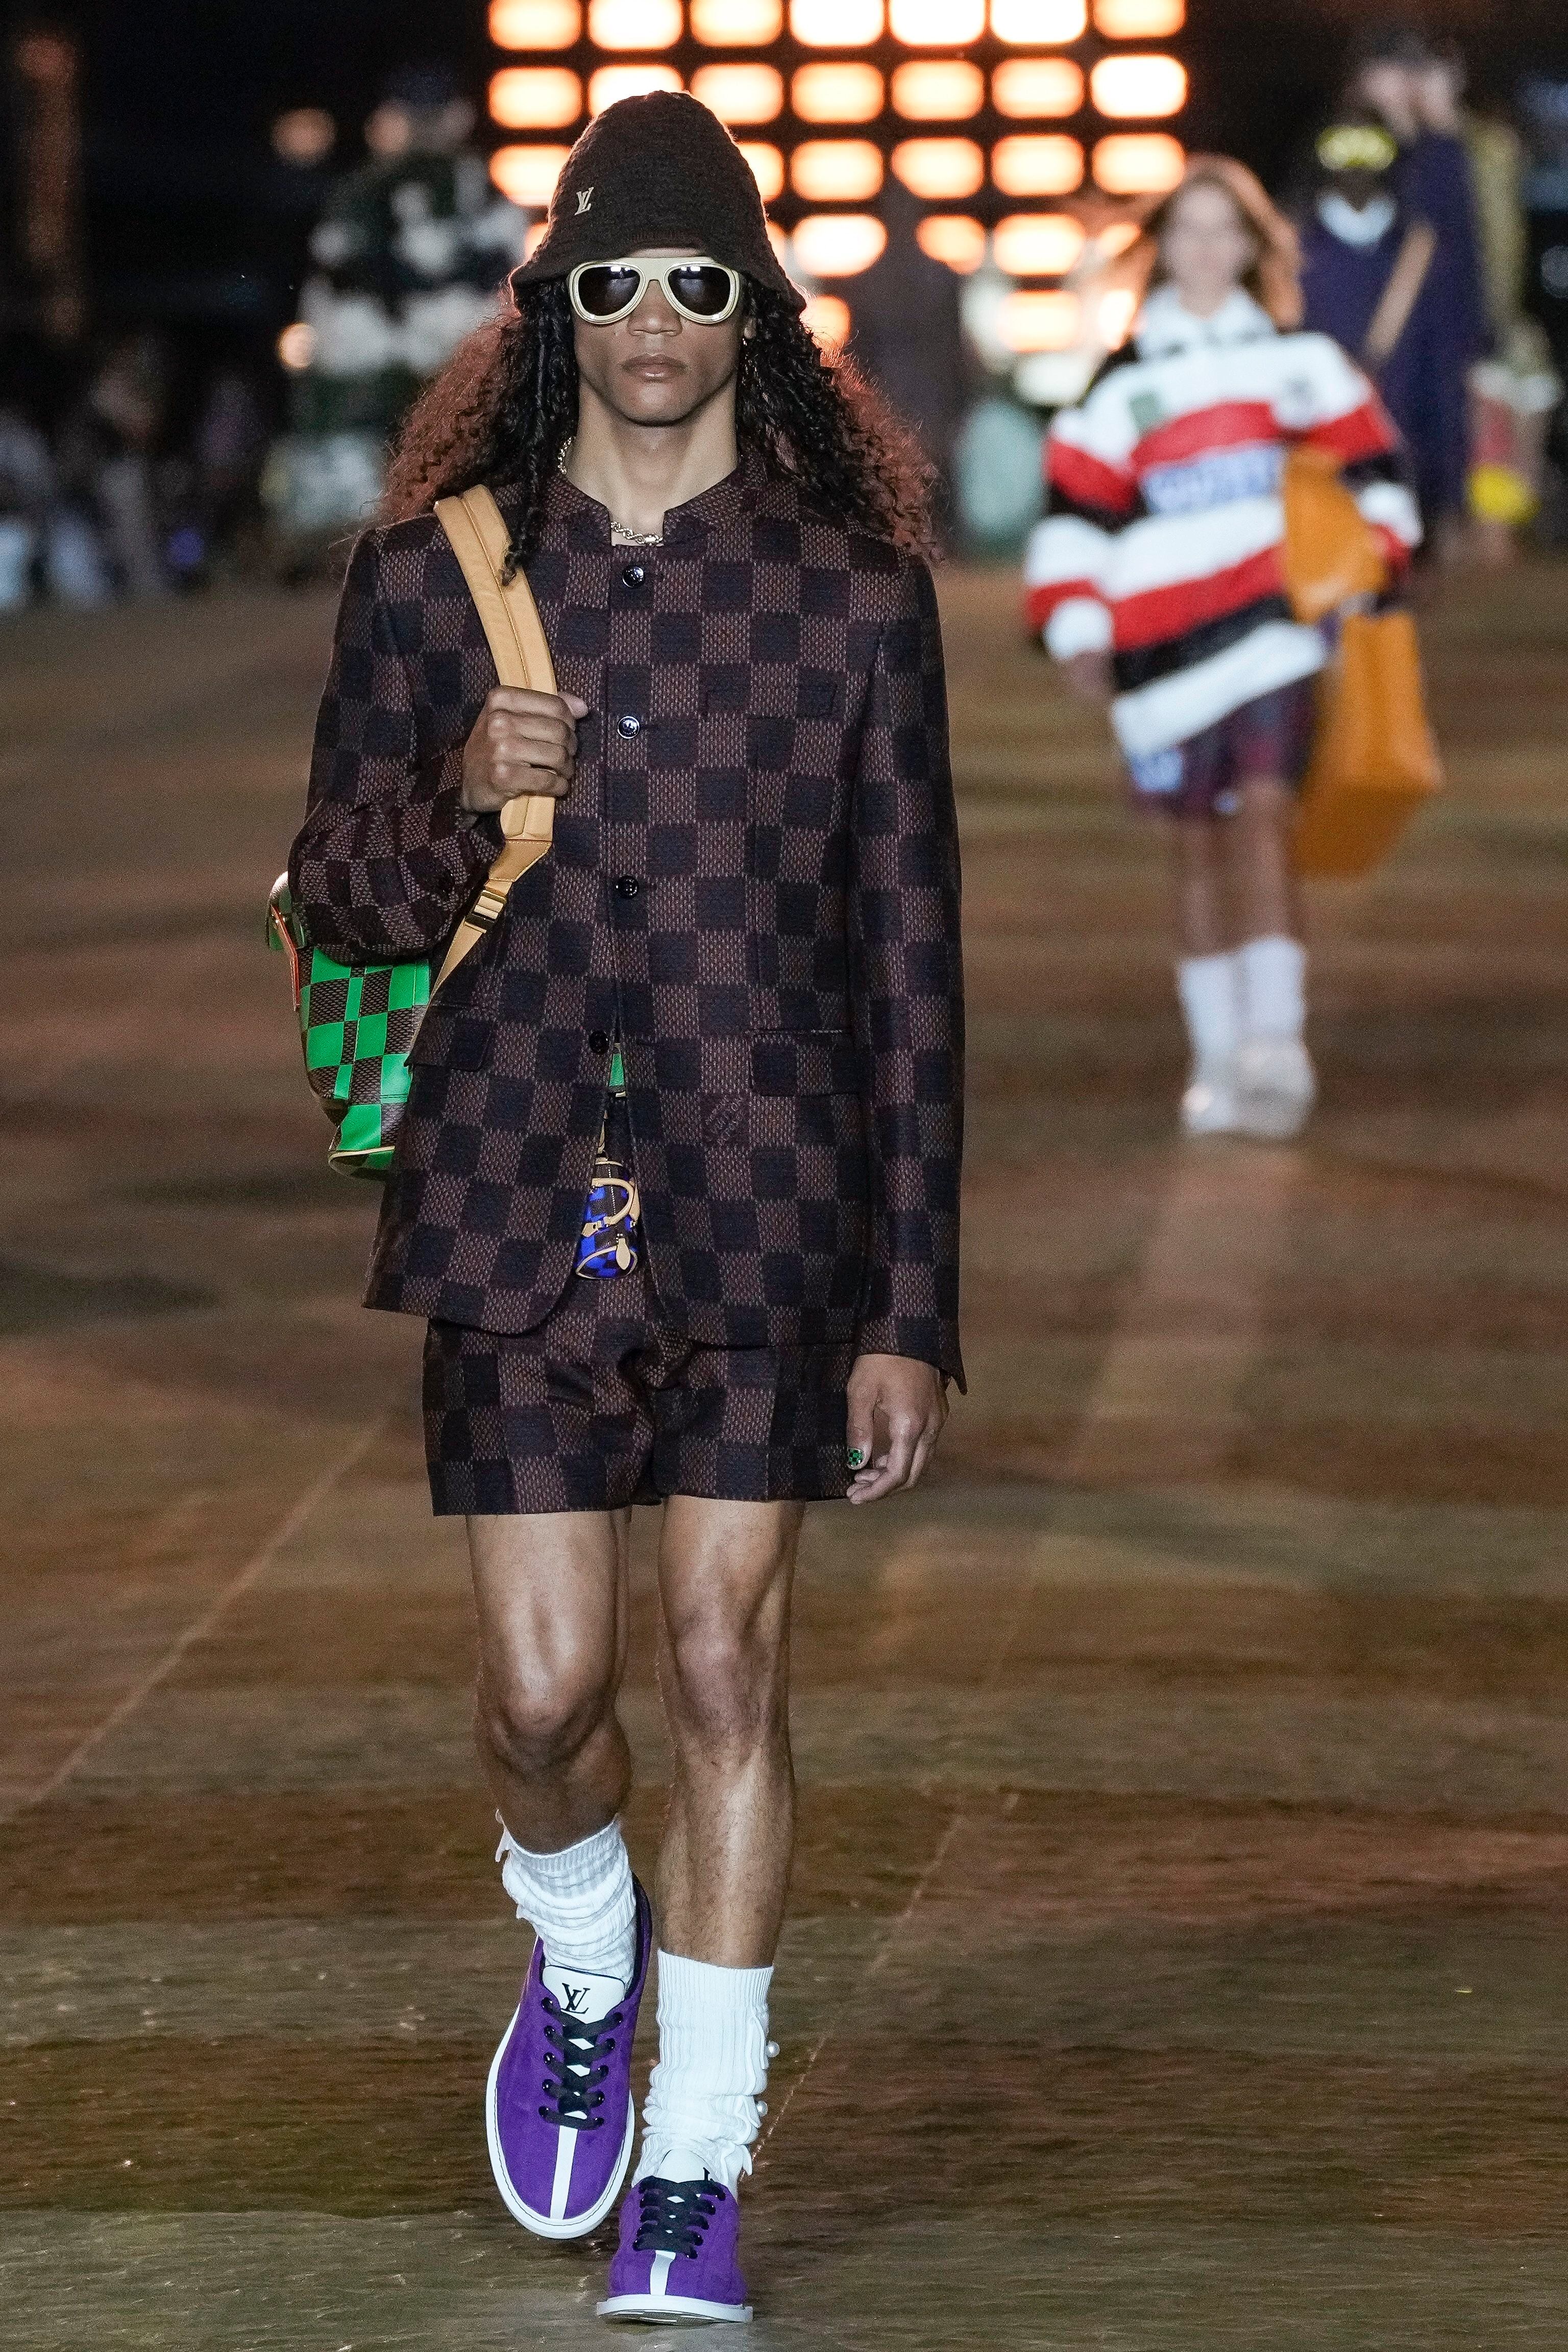 Paris Men's Fashion Week: Pharrell Williams kicks off glitzy event